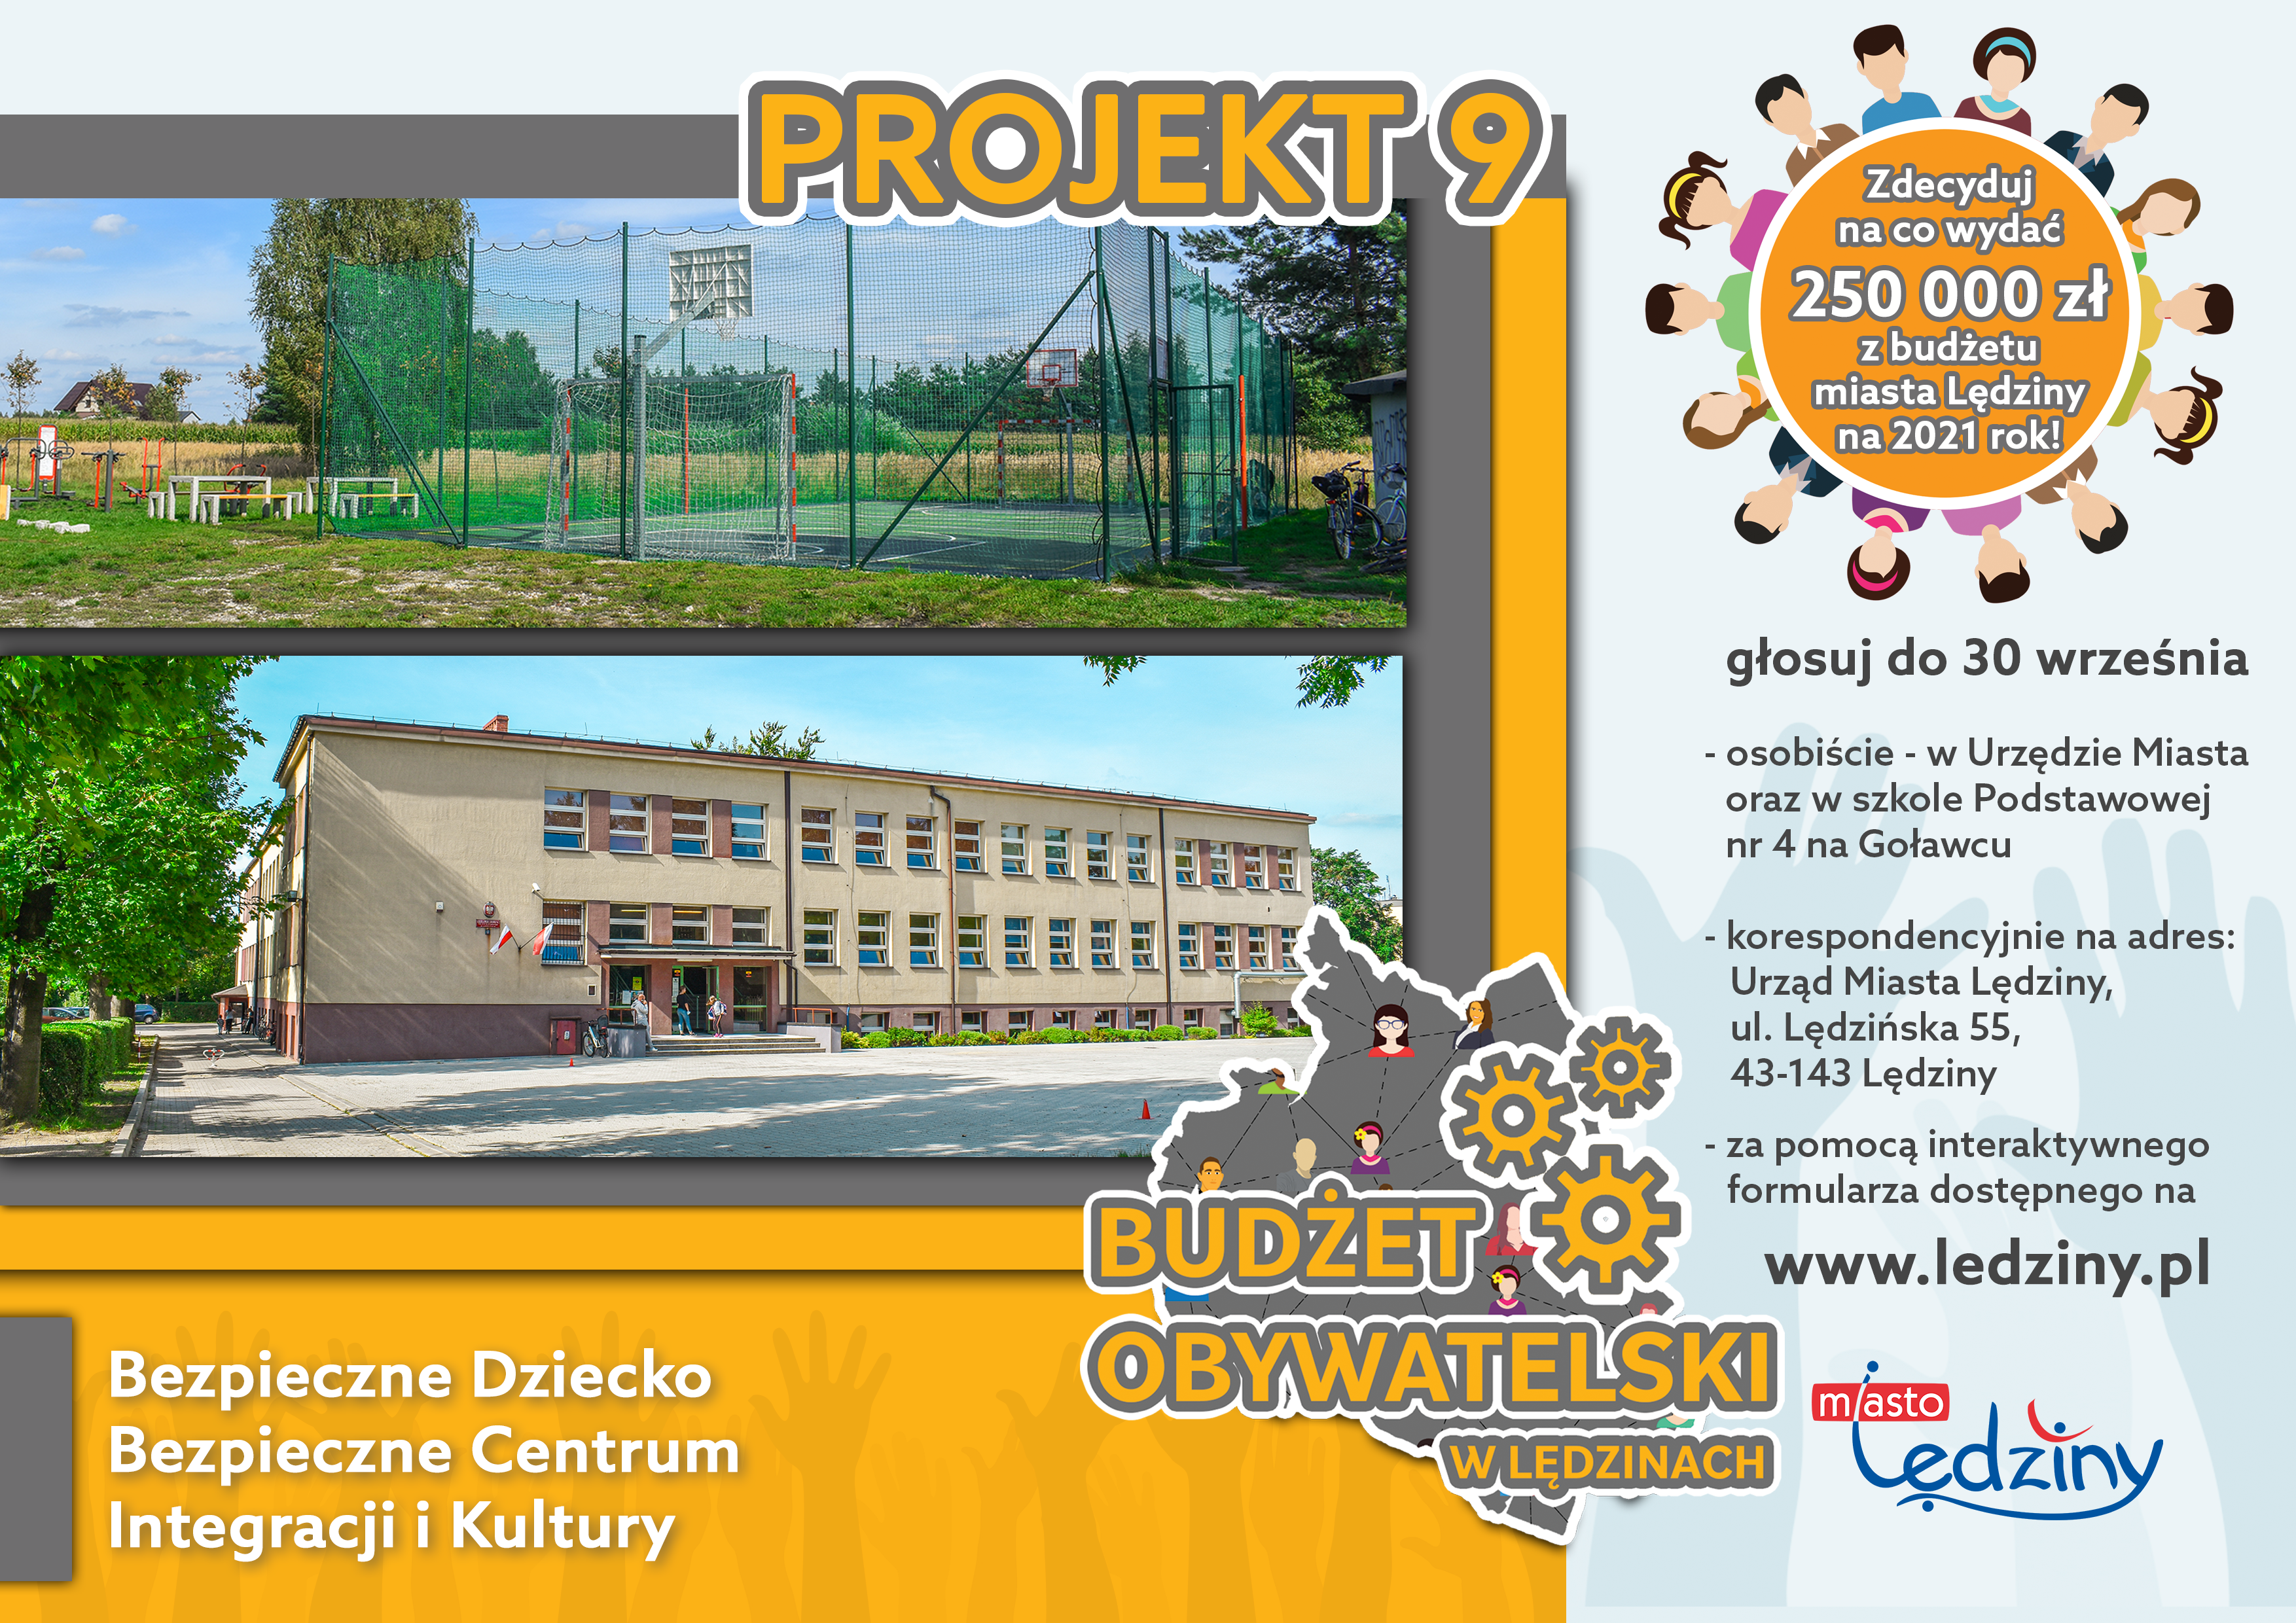 Projekt nr 9 Budżet Obywatelski - Bezpieczne DzieckoBezpieczne Centrum Integracji i Kultury (ul. Hołdunowska i ul. Ułańska)